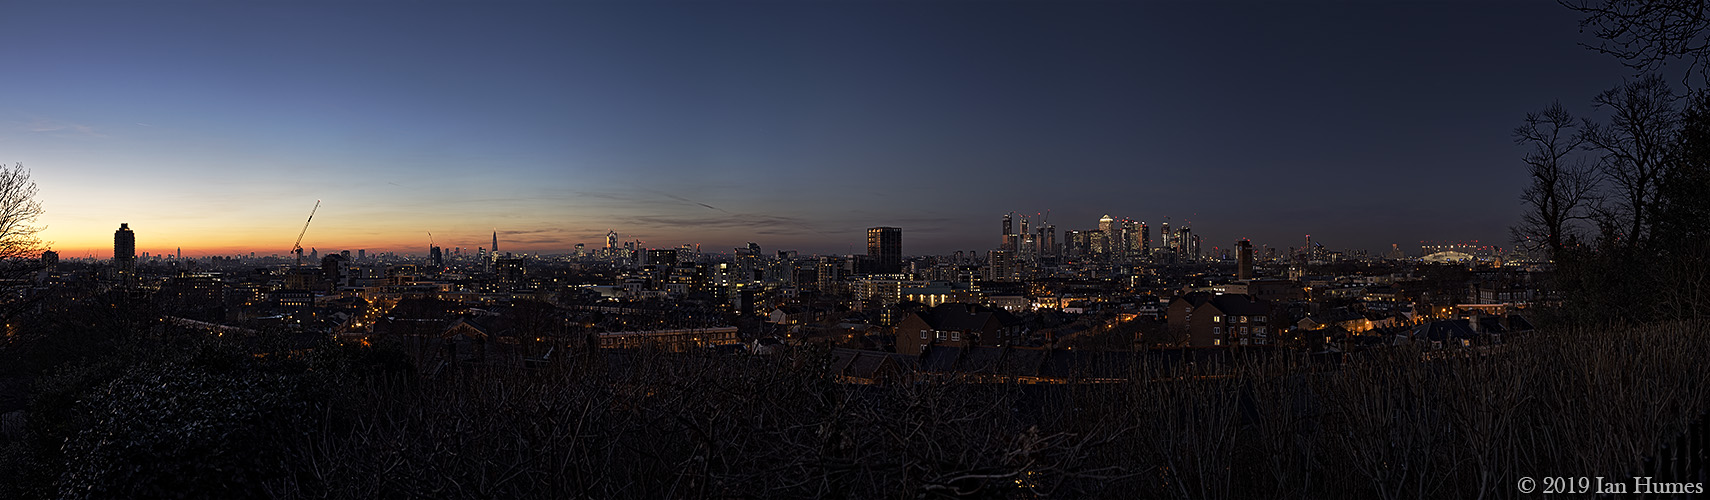 London At Sunset - Greenwich